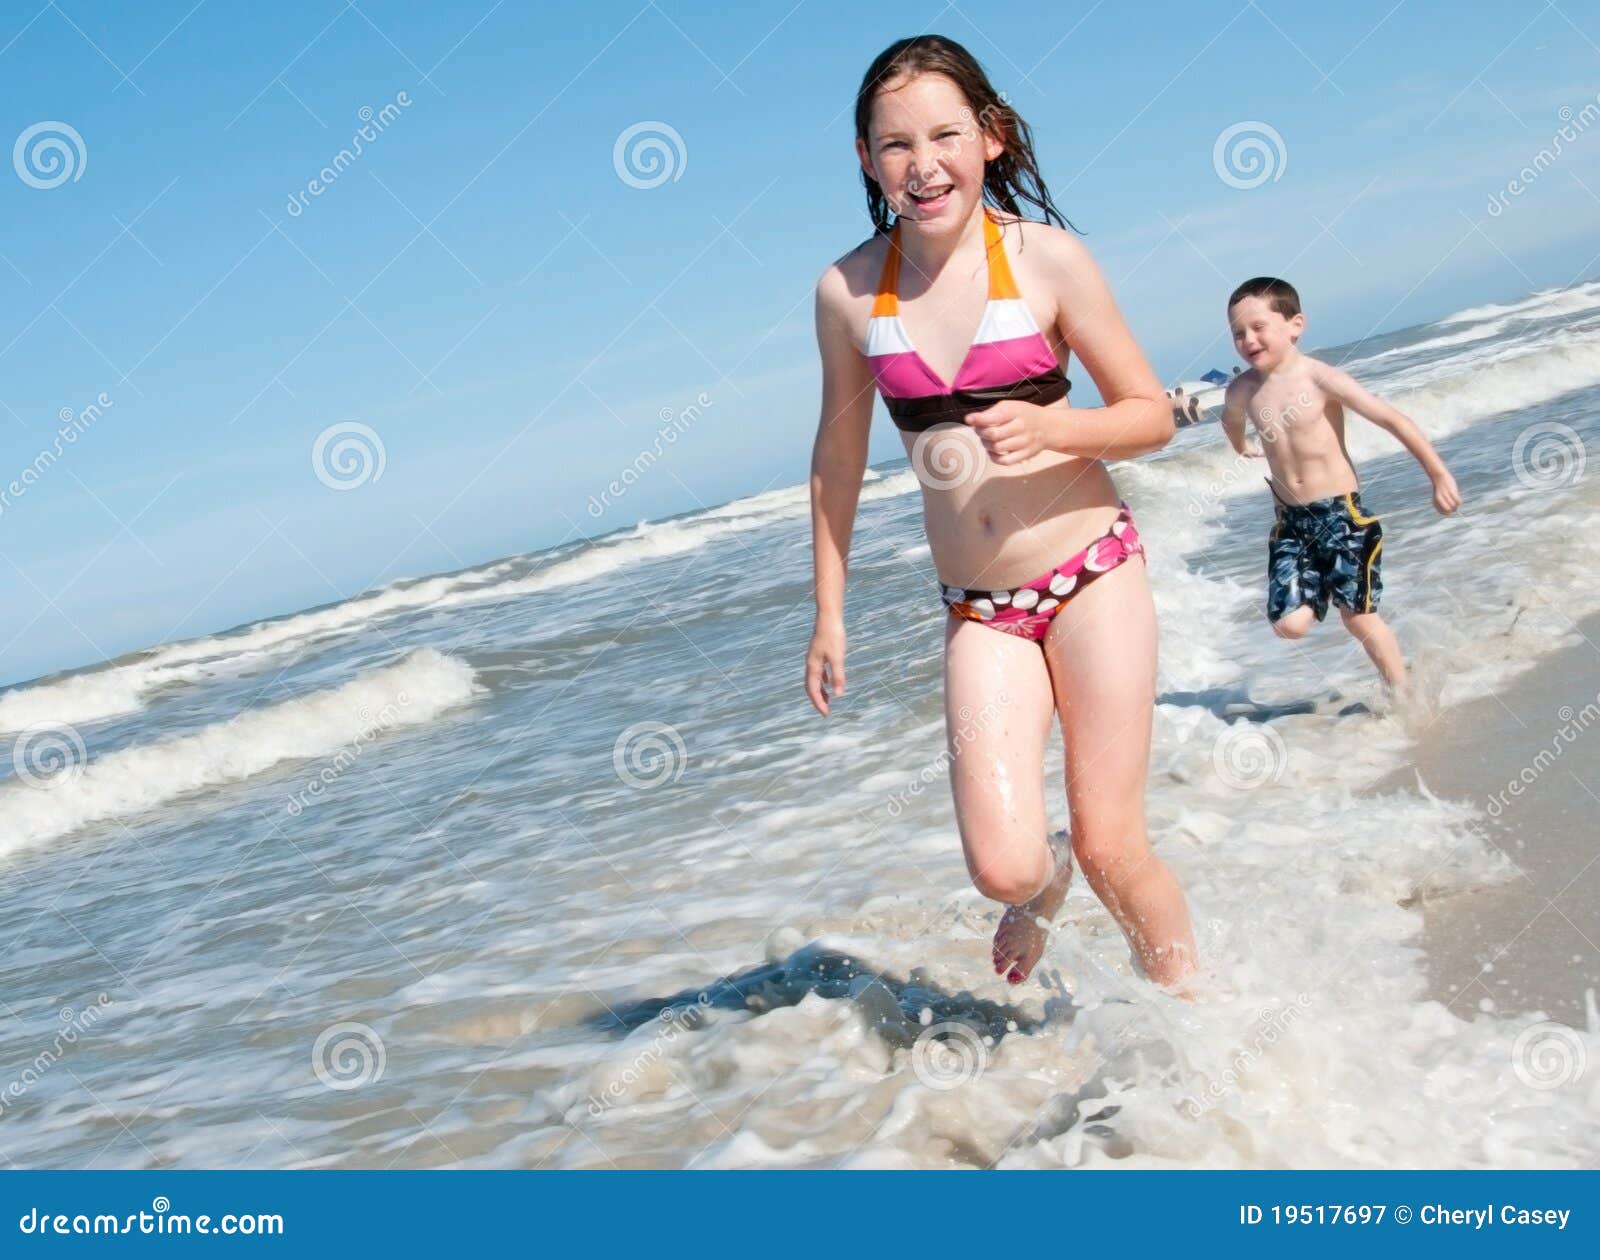 за голыми детьми на пляже фото 79